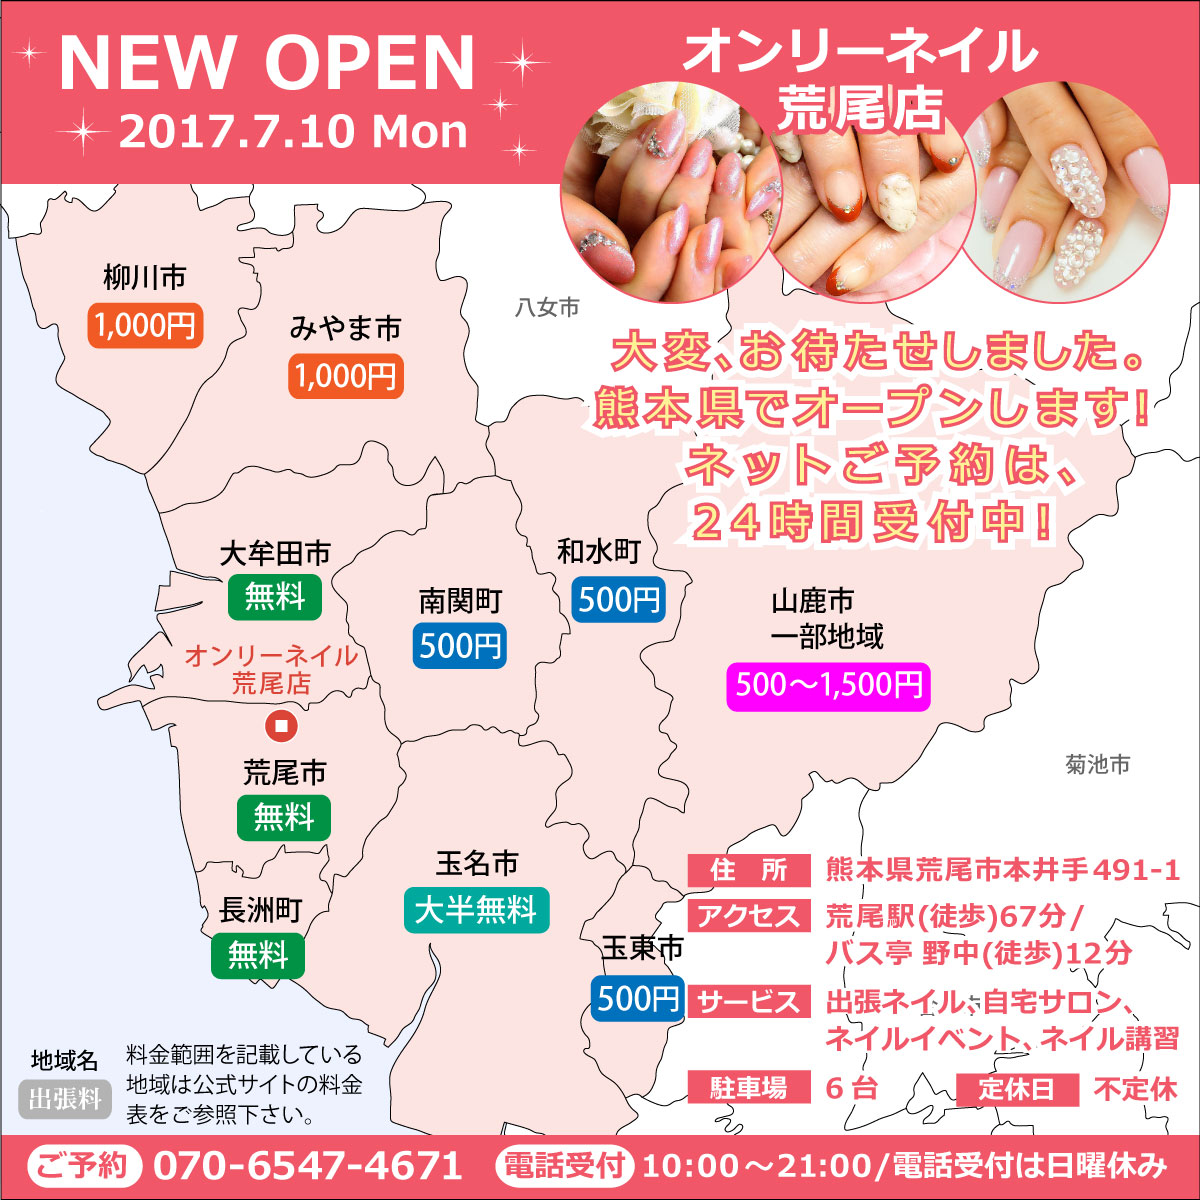 予約受付中 オンリーネイル荒尾店 7月10日 月 オープン 熊本県